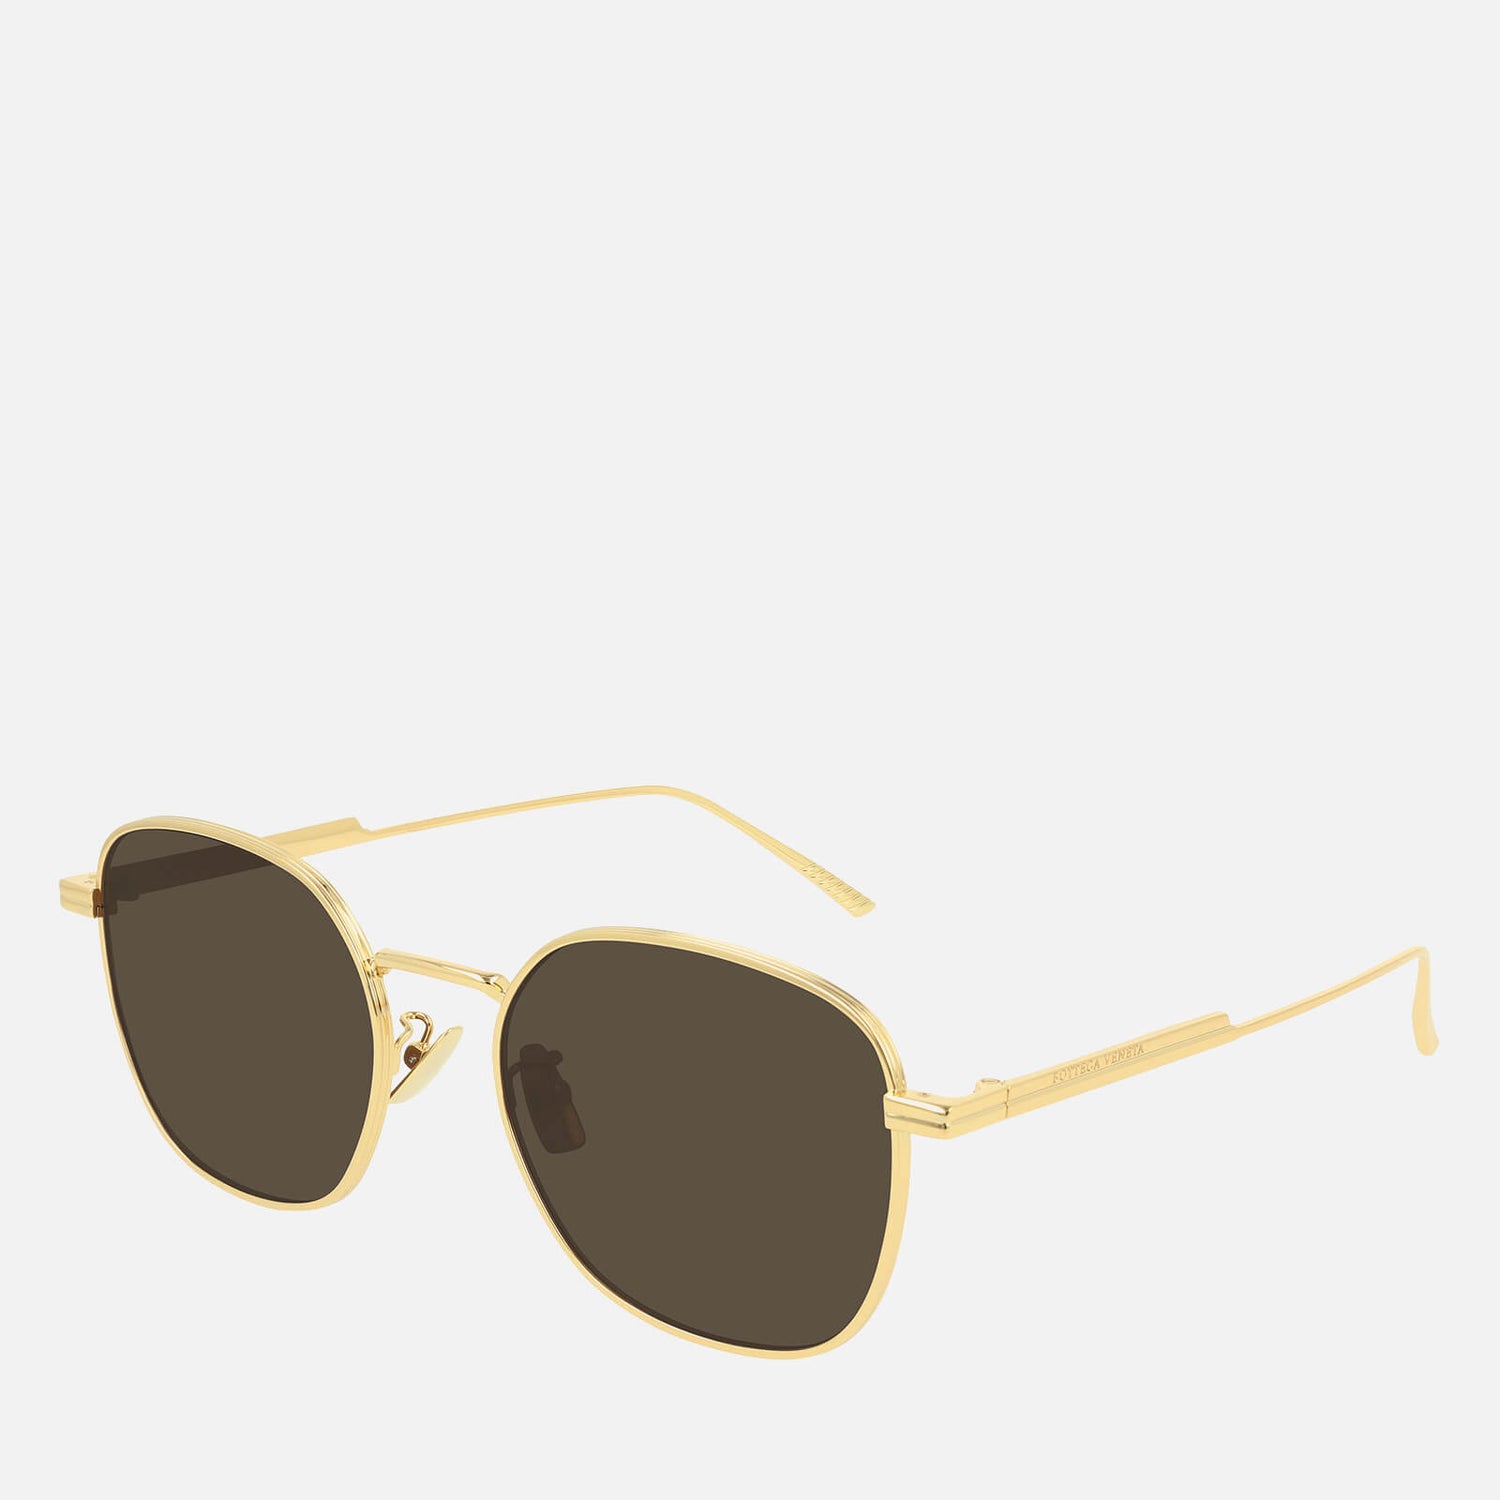 Bottega Veneta Soft Square Frame Sunglasses - Gold/Brown